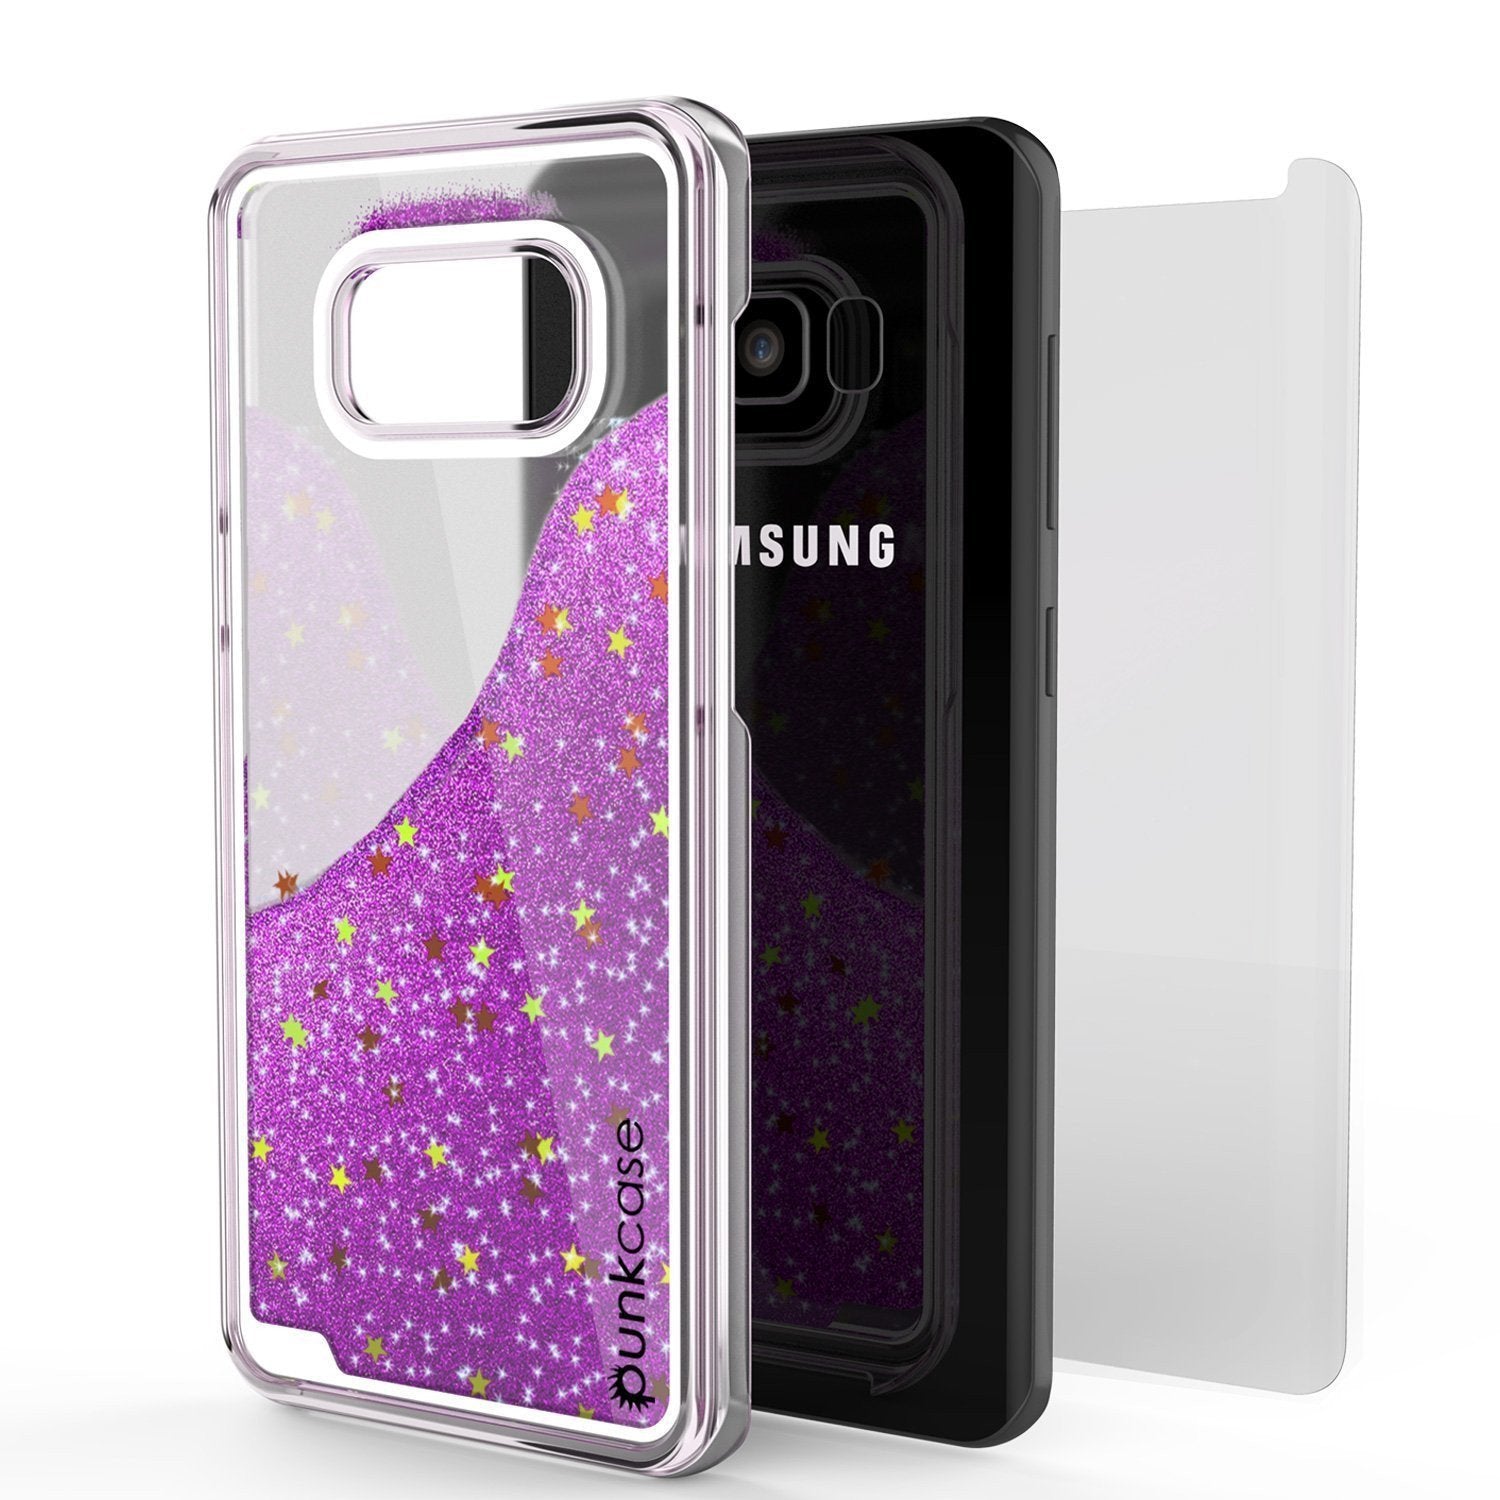 Galaxy S8 Case, Punkcase Liquid Purple Series Protective Glitter Cover